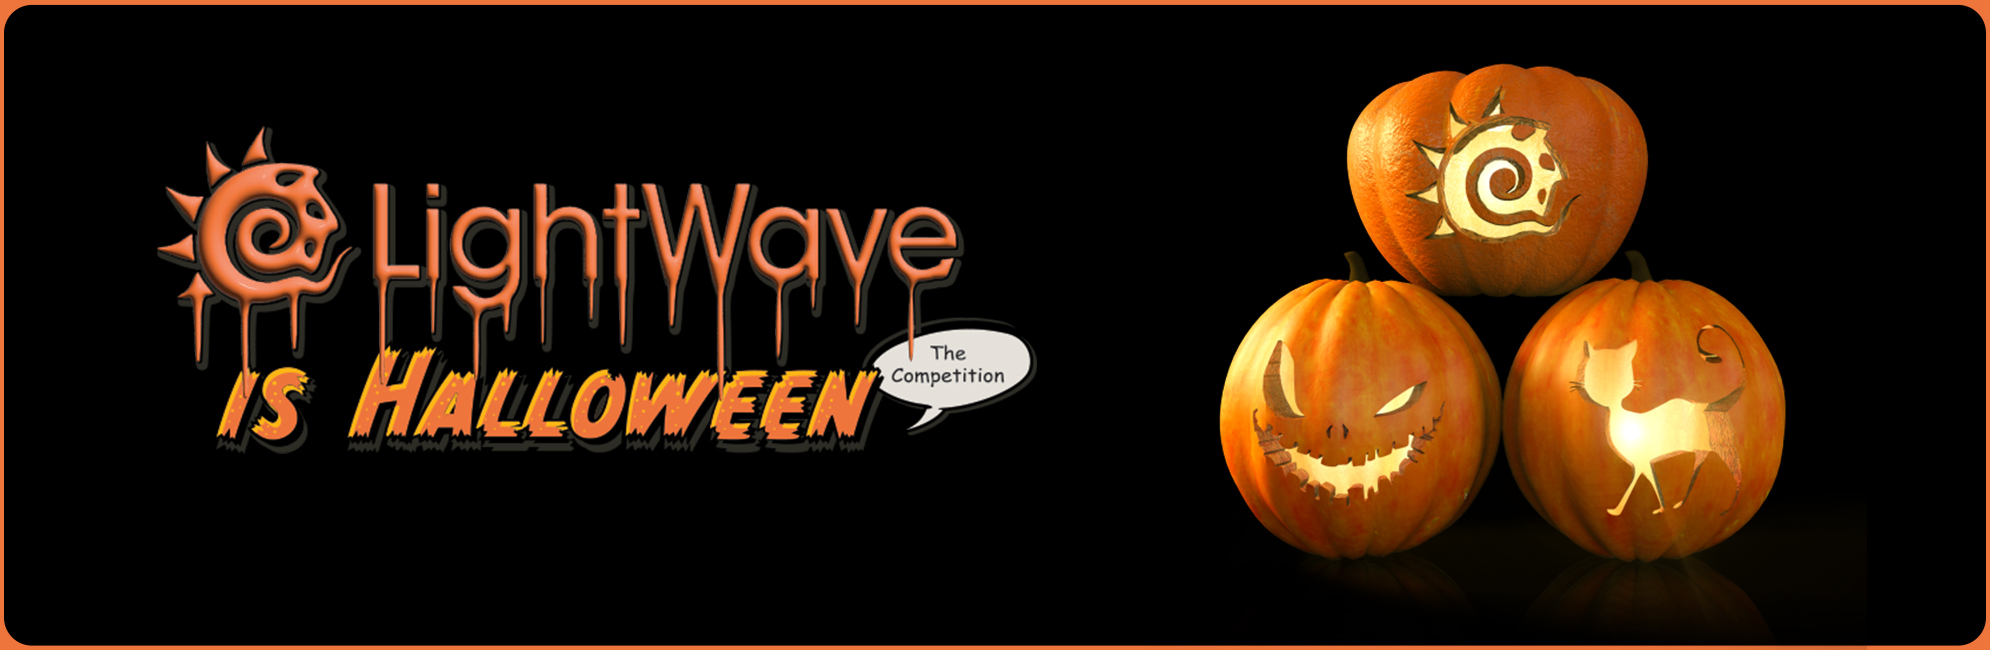 Nome: LightWave is Halloween  LightWave 3D Promo 20320918.jpg
Visite: 96
Dimensione: 387.4 KB